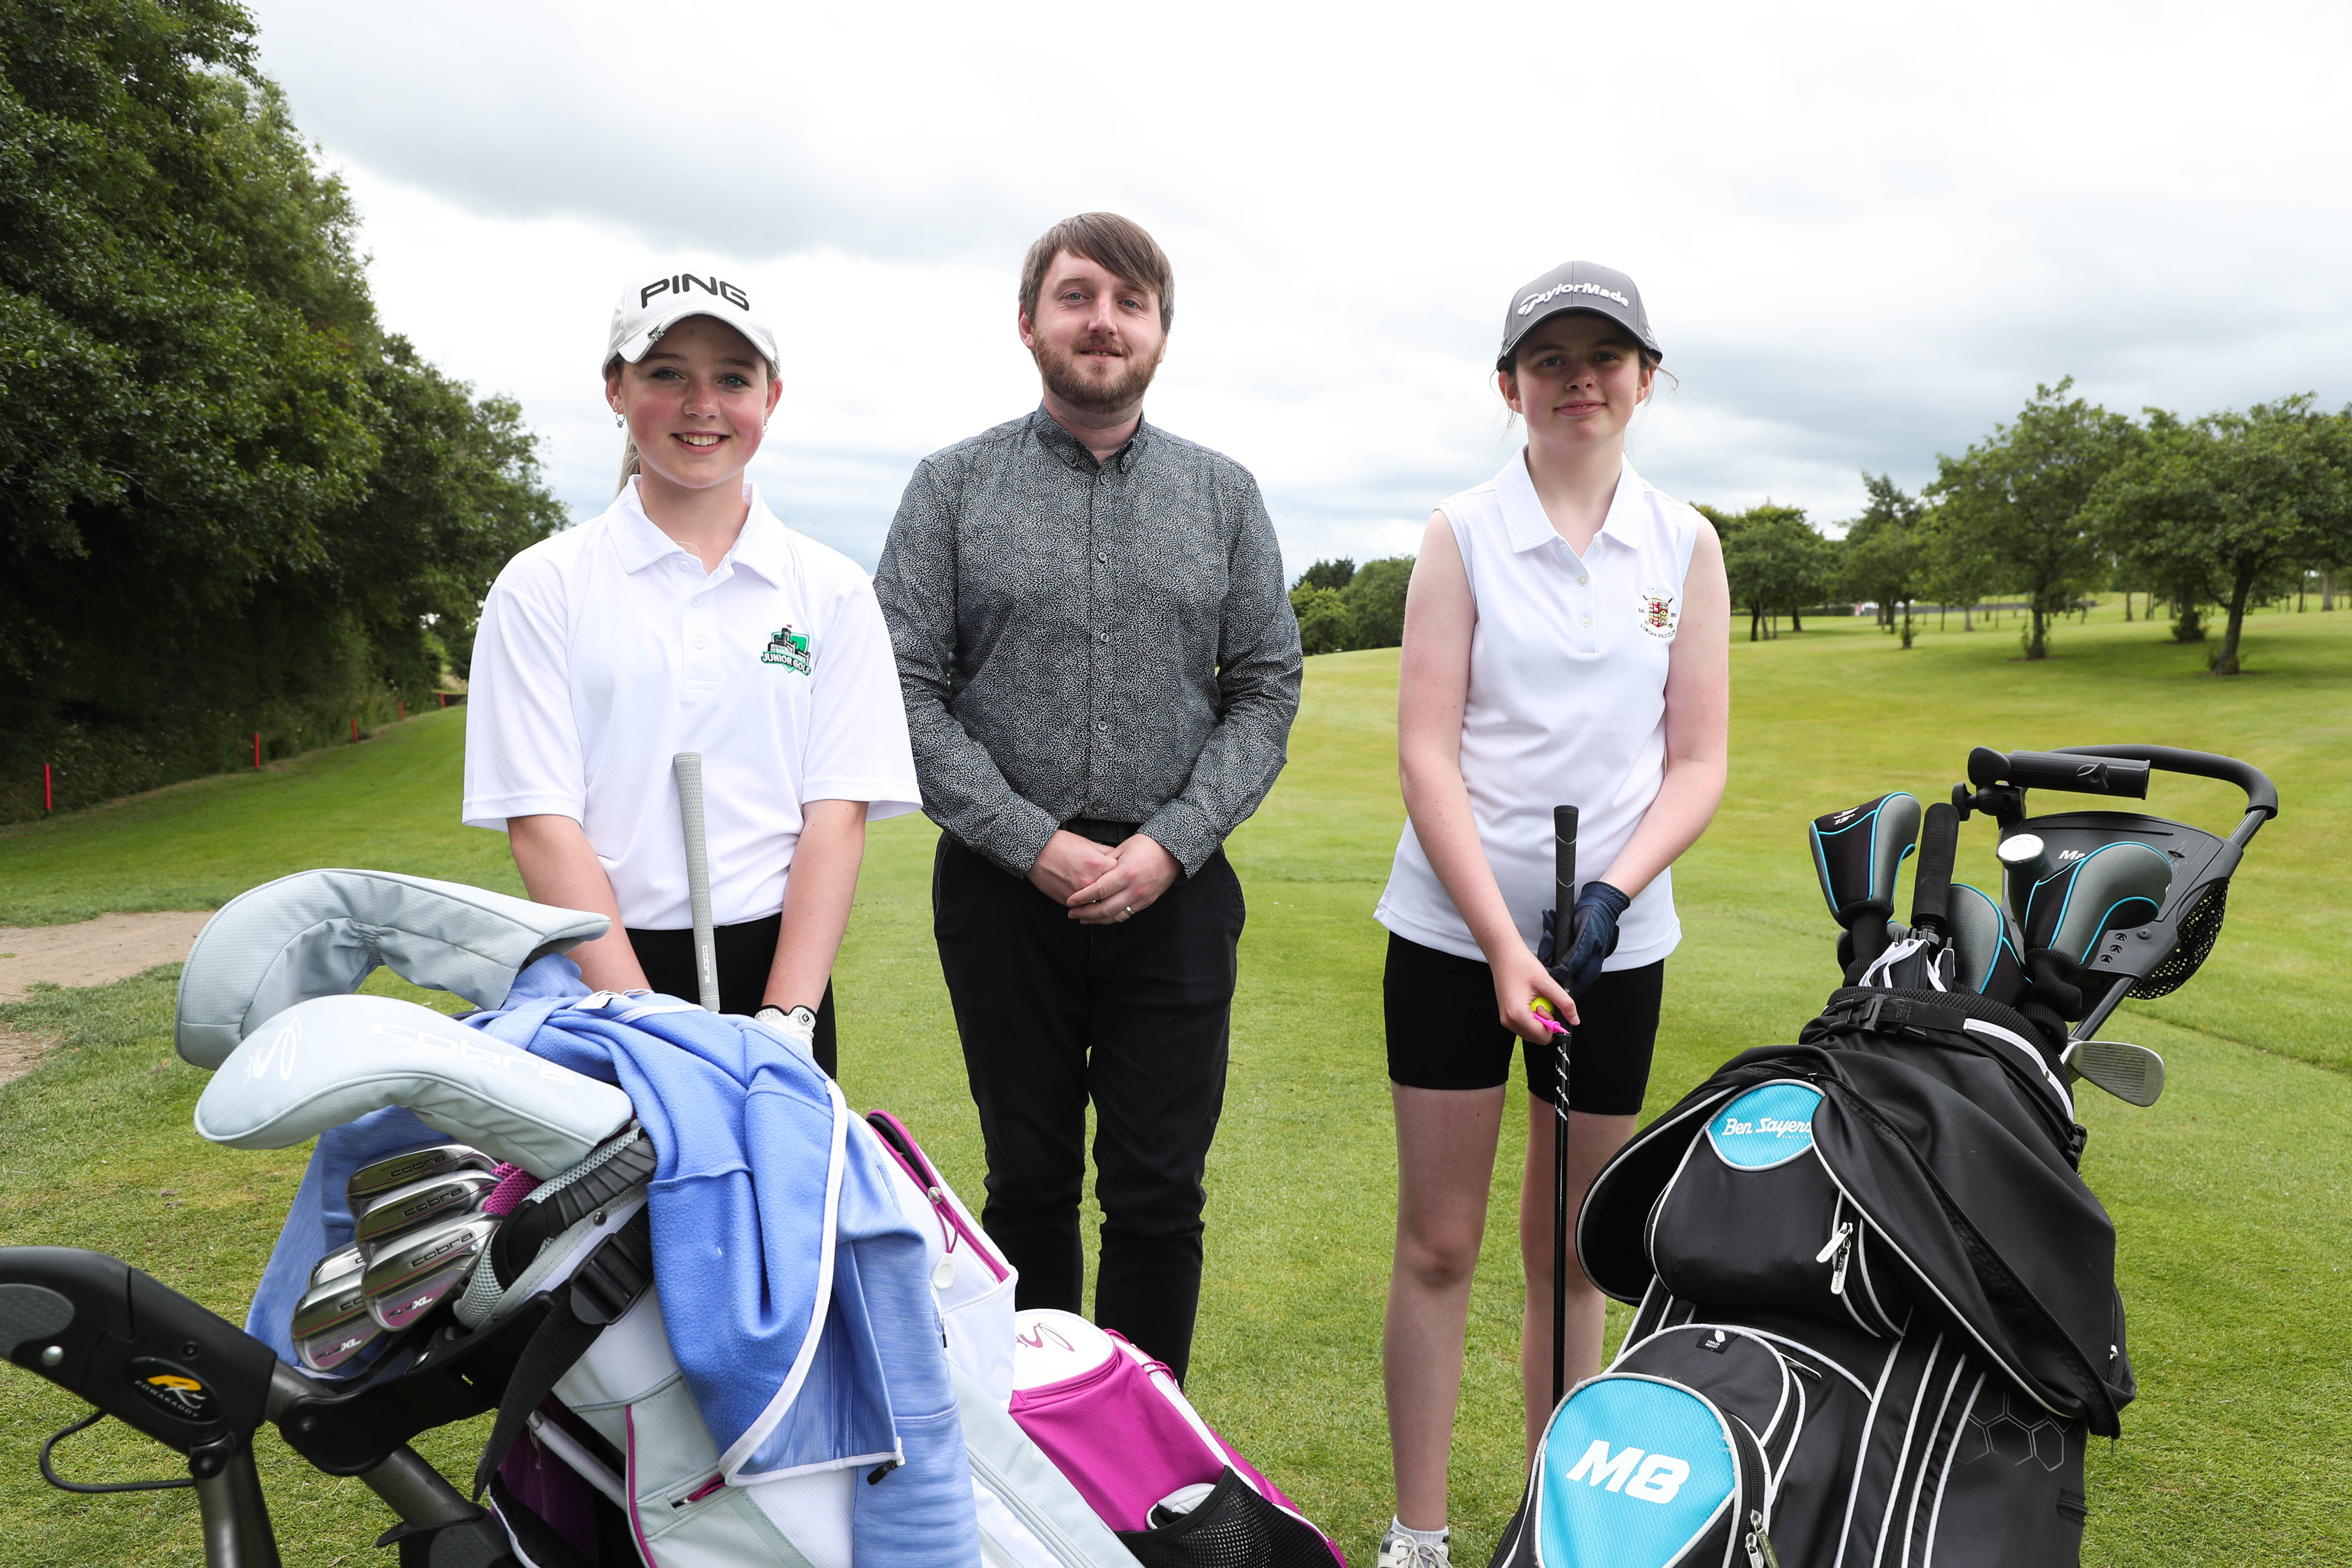 2022 Golf Ireland Ulster under 19 Girls Inter-Club Tournament